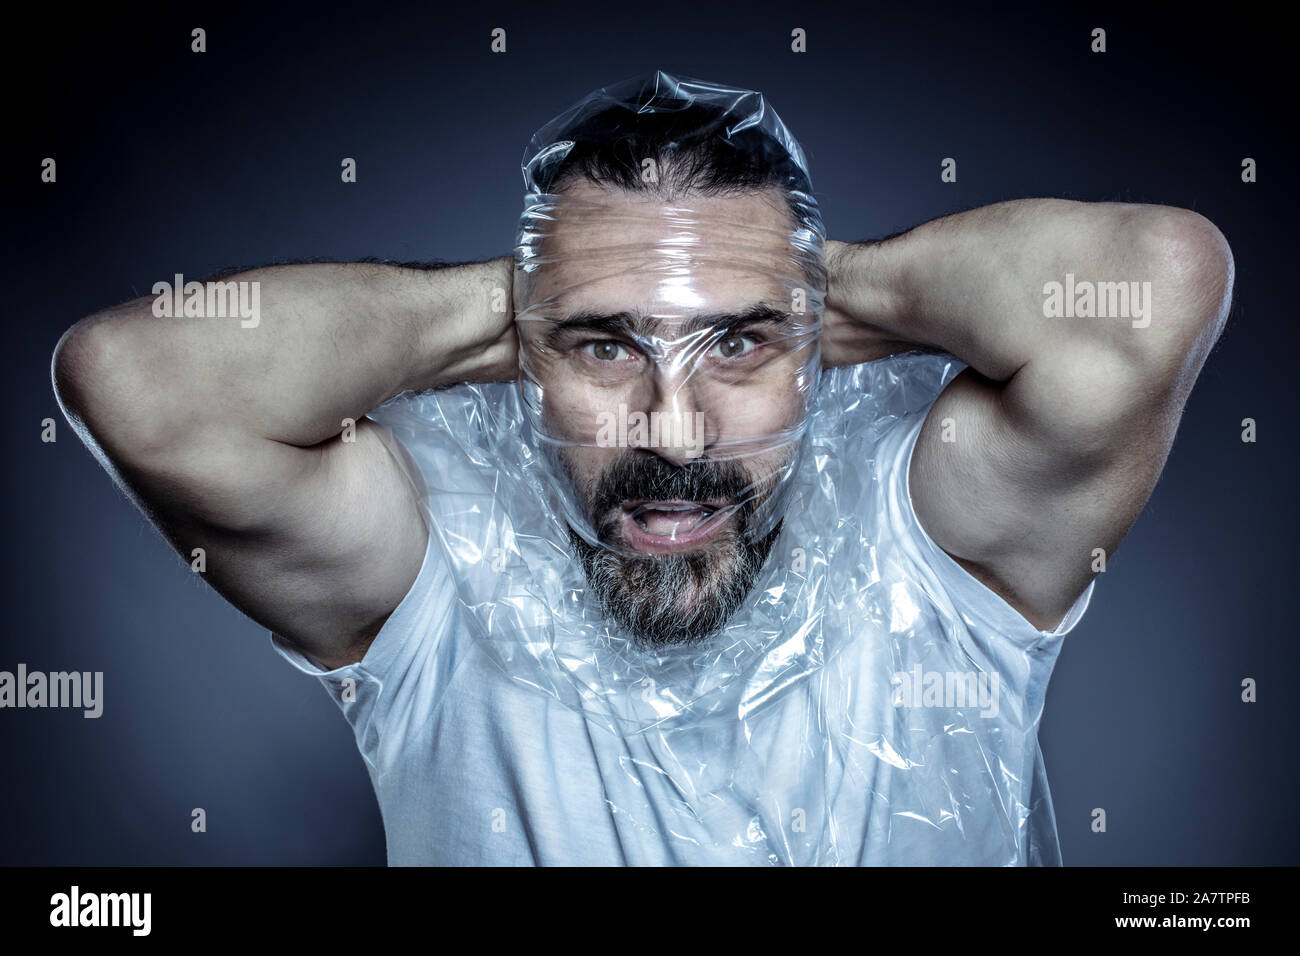 Ritratto di un uomo con la barba e la sua faccia avvolta in una pellicola di plastica. concetto di tossicità dei materiali in plastica e il loro uso eccessivo nella vita comune Foto Stock